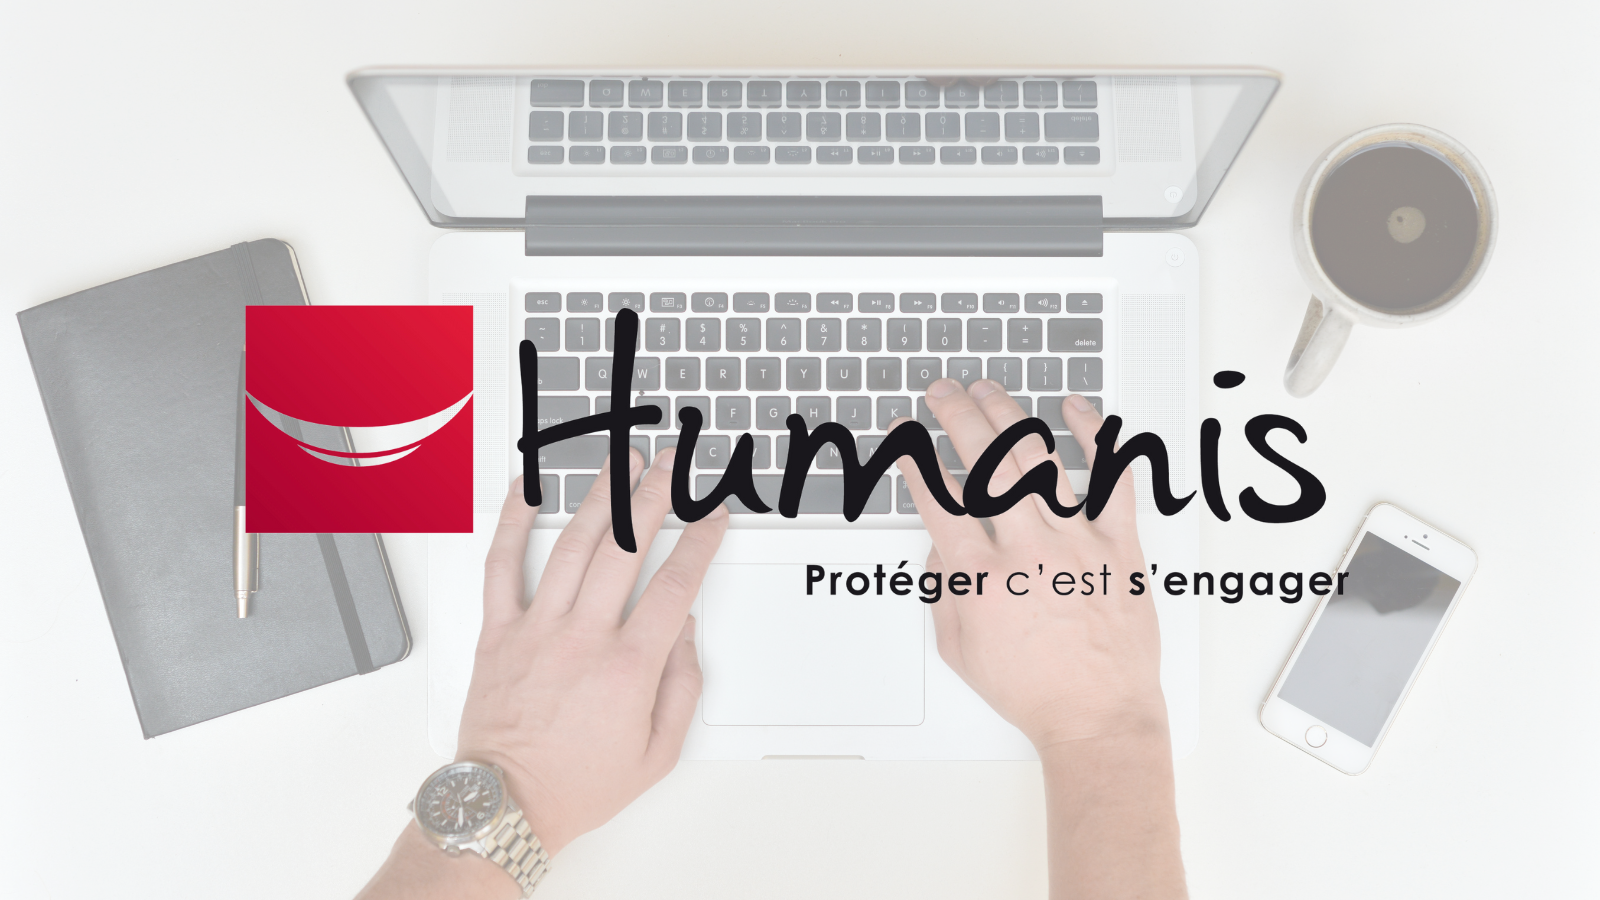 Image témoignage client Humanis